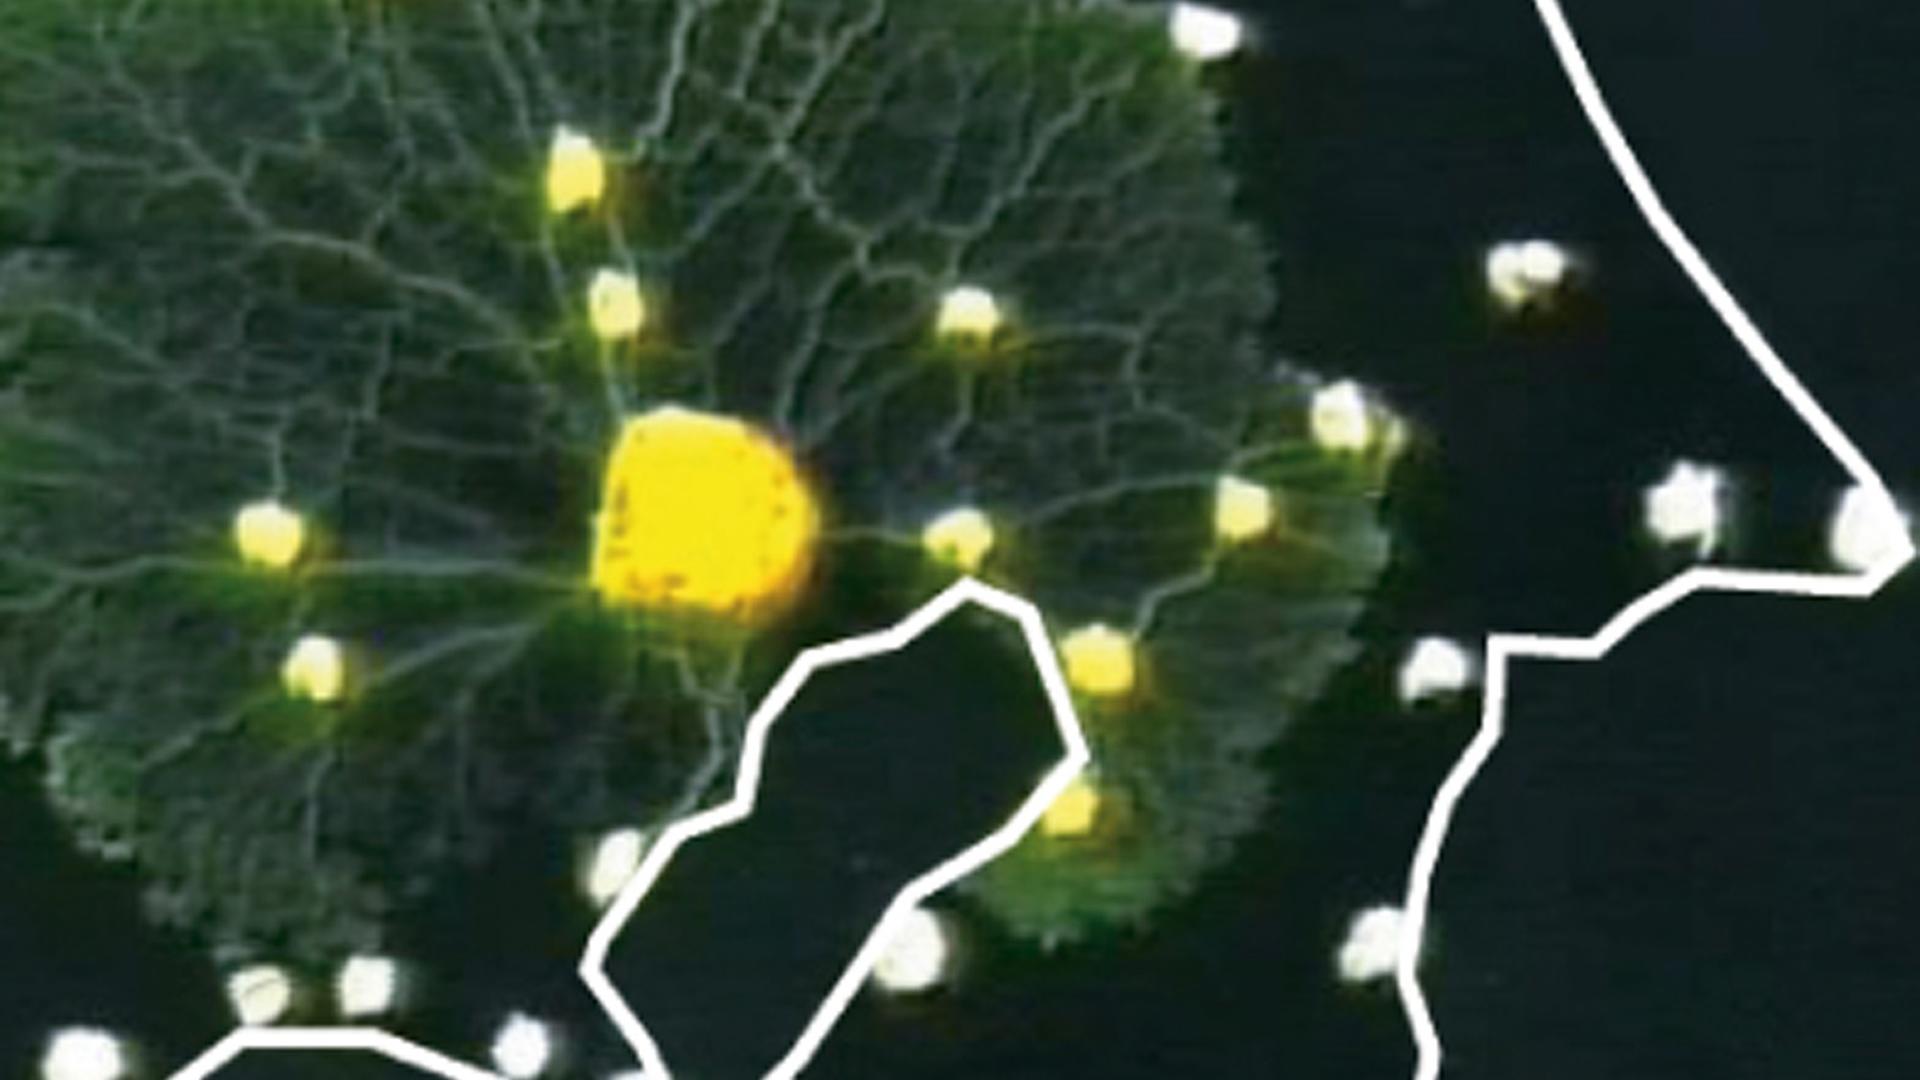 Grün und gelb gefärbt ist die Ausbreitung des Schleimpilzes Physarum polycephalum auf einem Laborbild dargestellt.